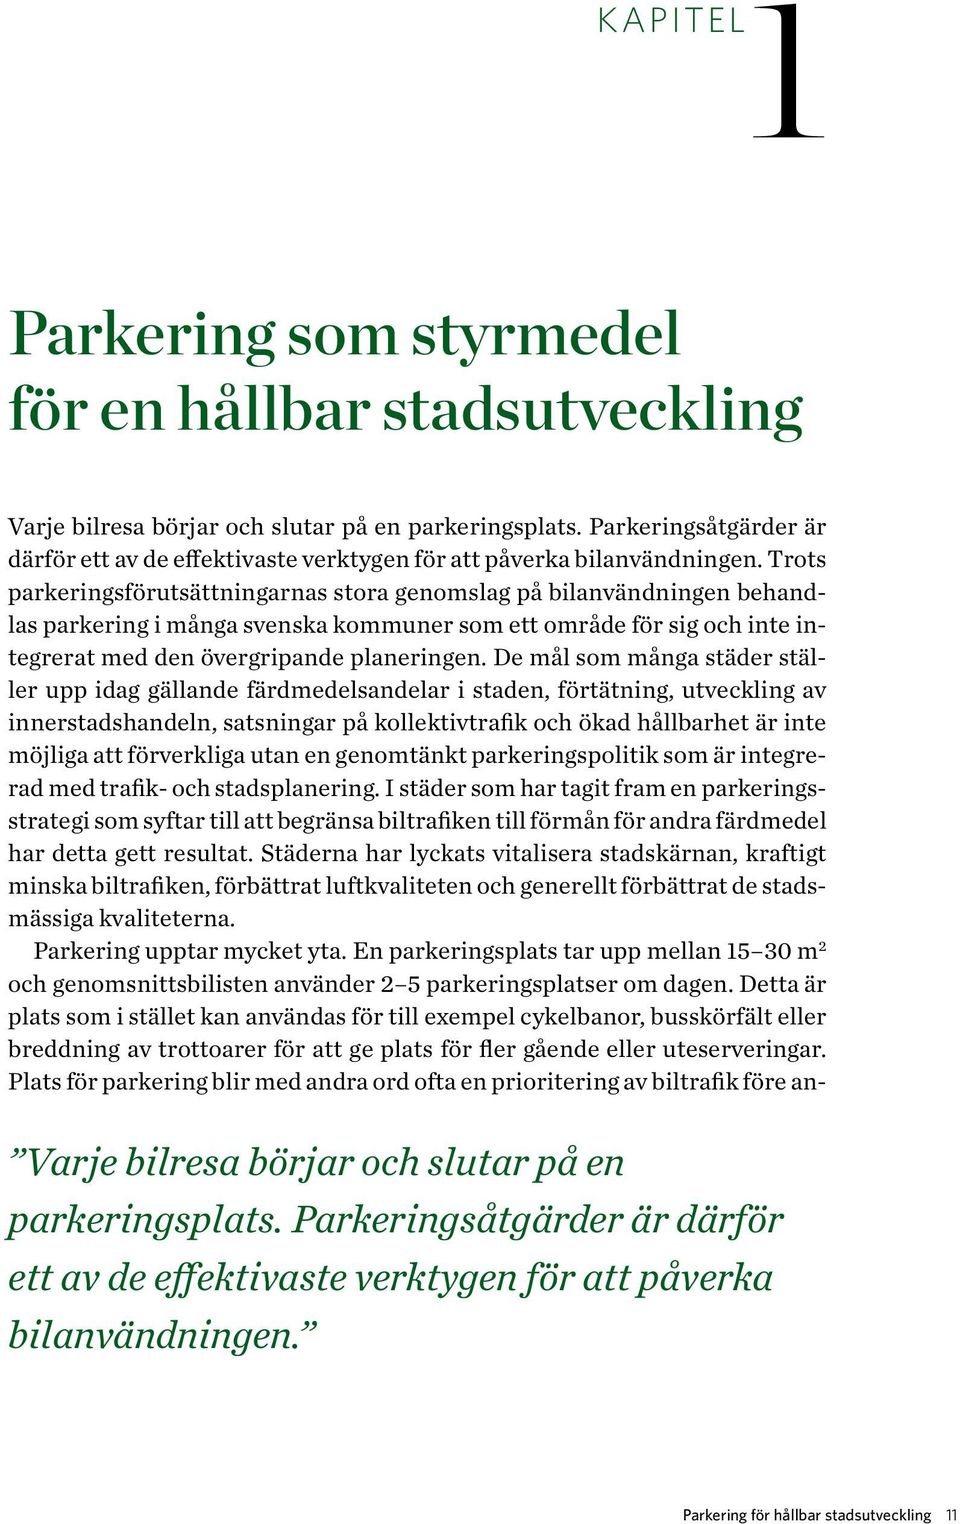 Trots parkeringsförutsättningarnas stora genomslag på bilanvändningen behandlas parkering i många svenska kommuner som ett område för sig och inte integrerat med den övergripande planeringen.